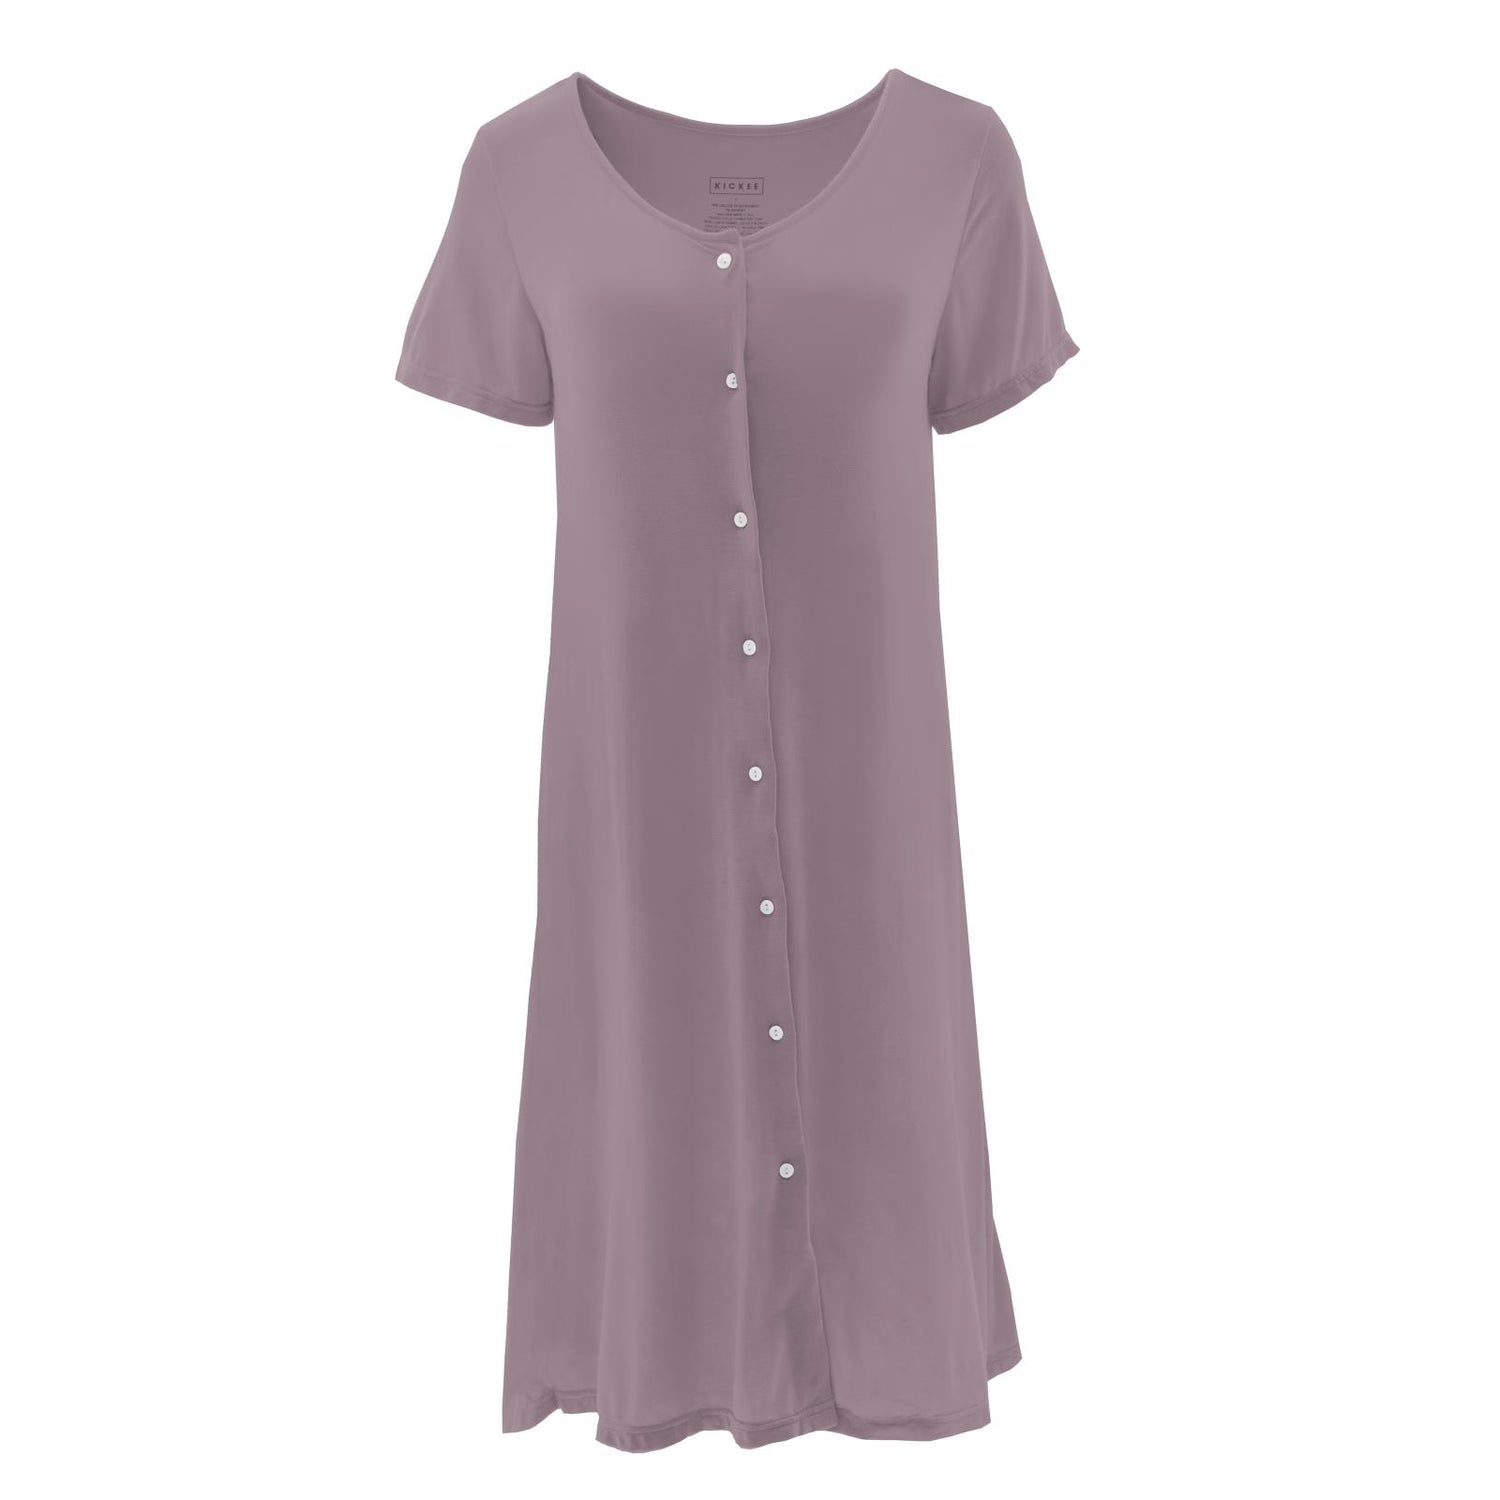 Women's Nursing Nightgown in Elderberry